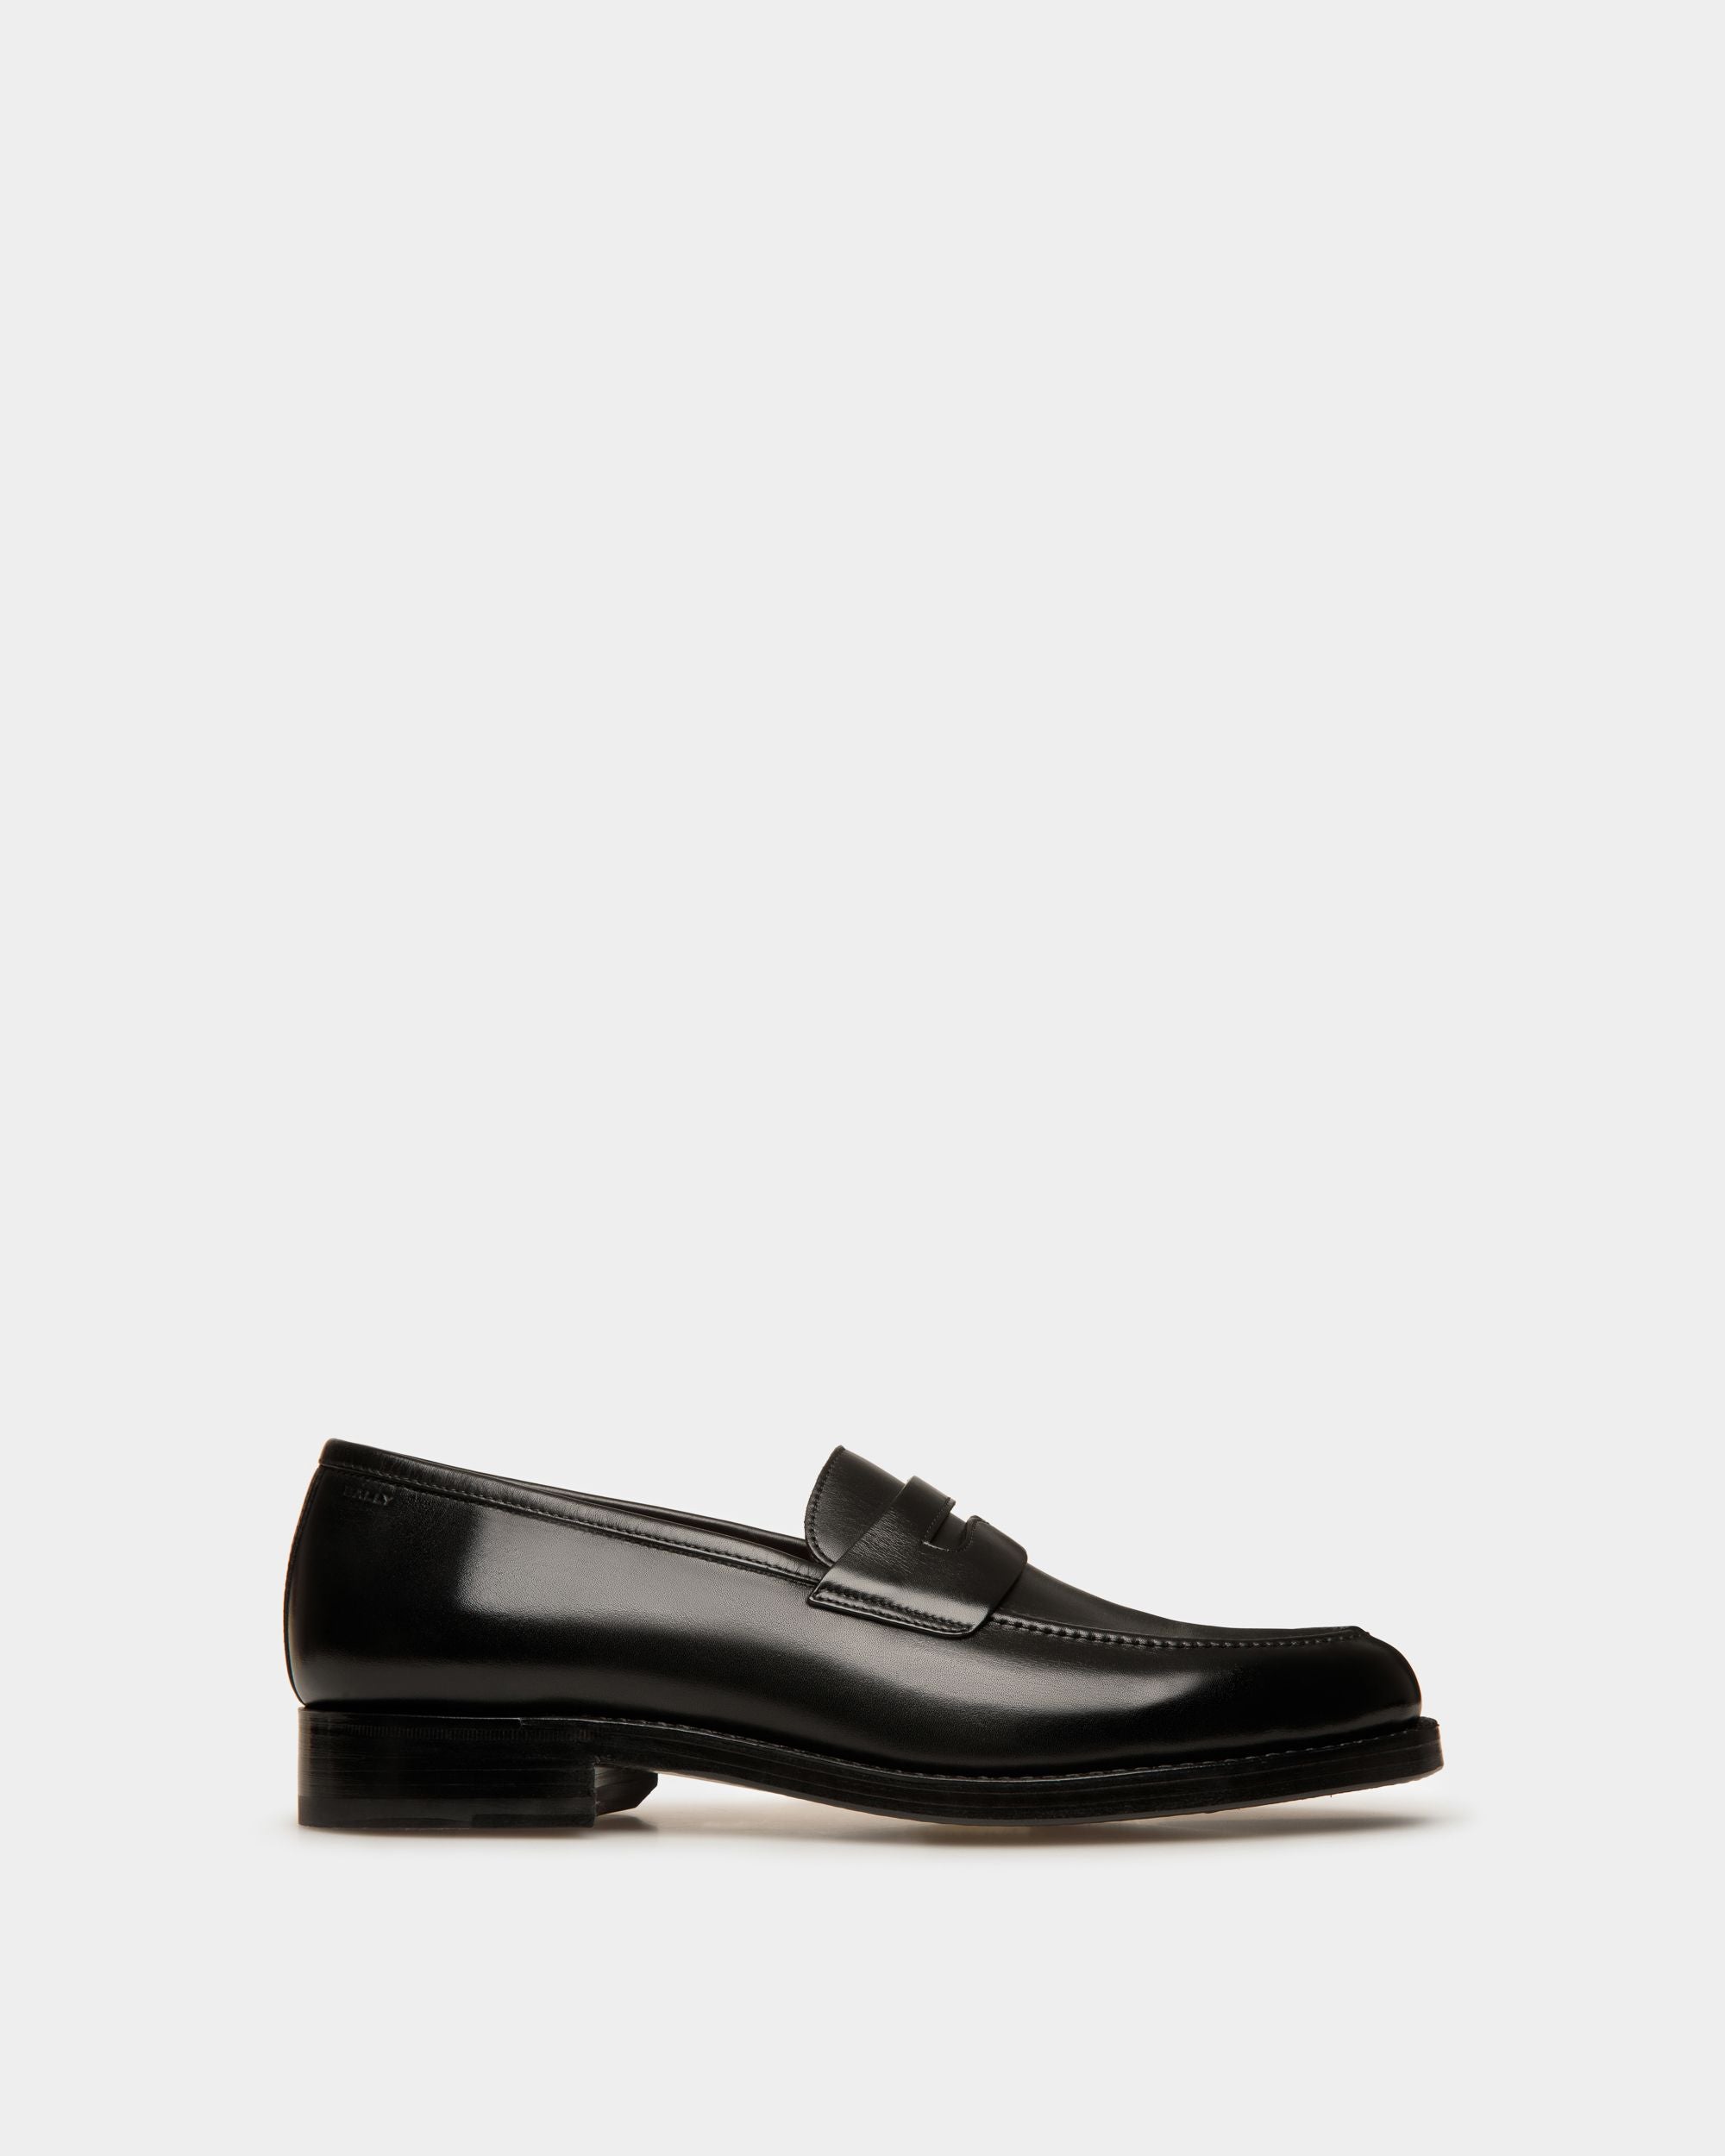 Designer Leather slip-on Loafers & Moccasins for Men | Bally